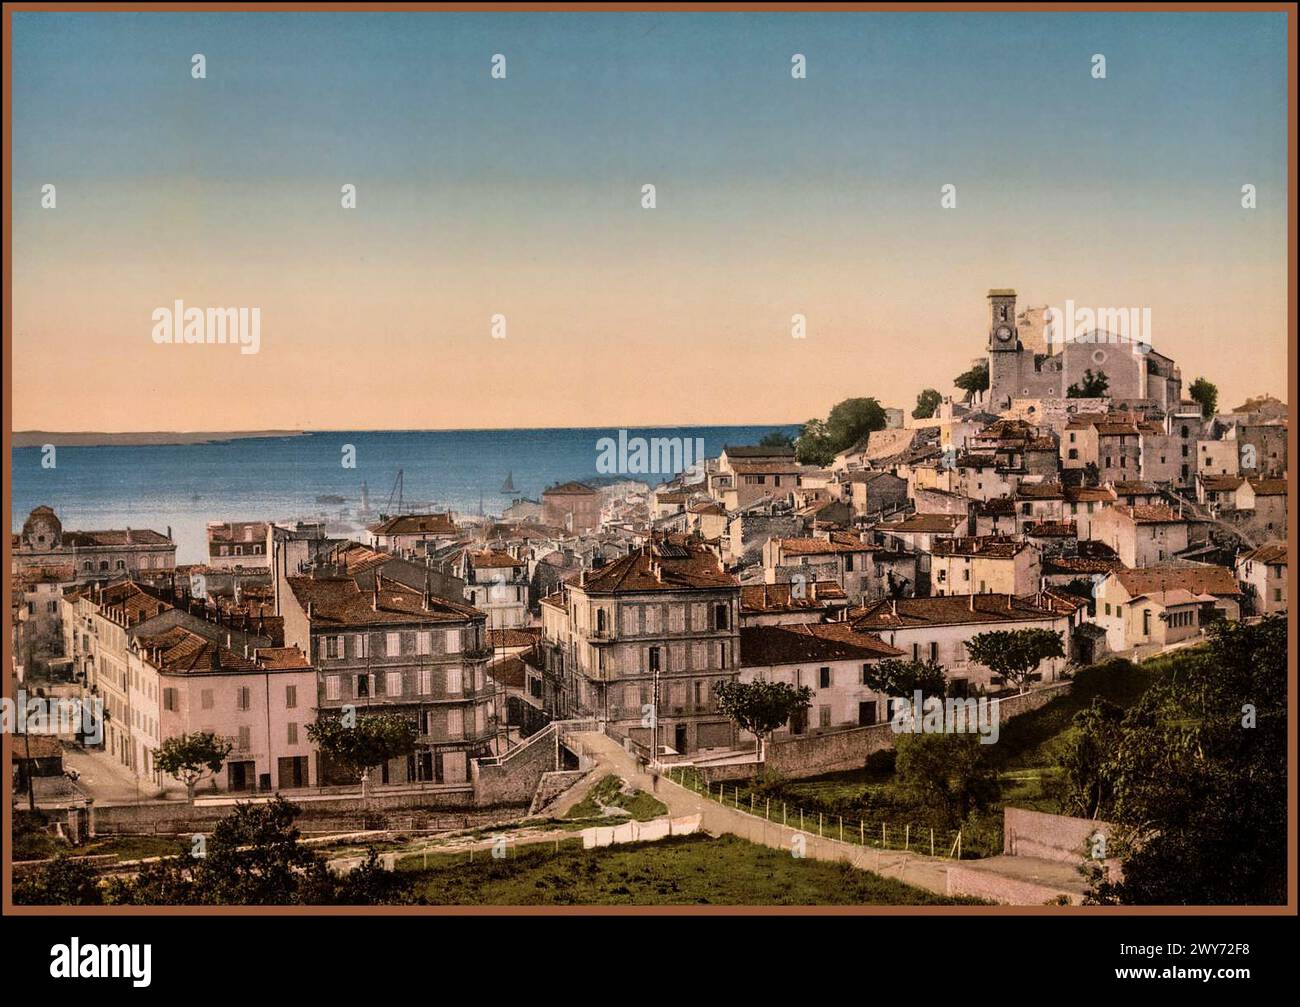 CANNES RIVIERA FRANCE Photochrom d'epoca, città vecchia di Cannes del 1890. Cromolitografia vittoriana Fotografia Cote d'Azur nel sud della Francia Foto Stock